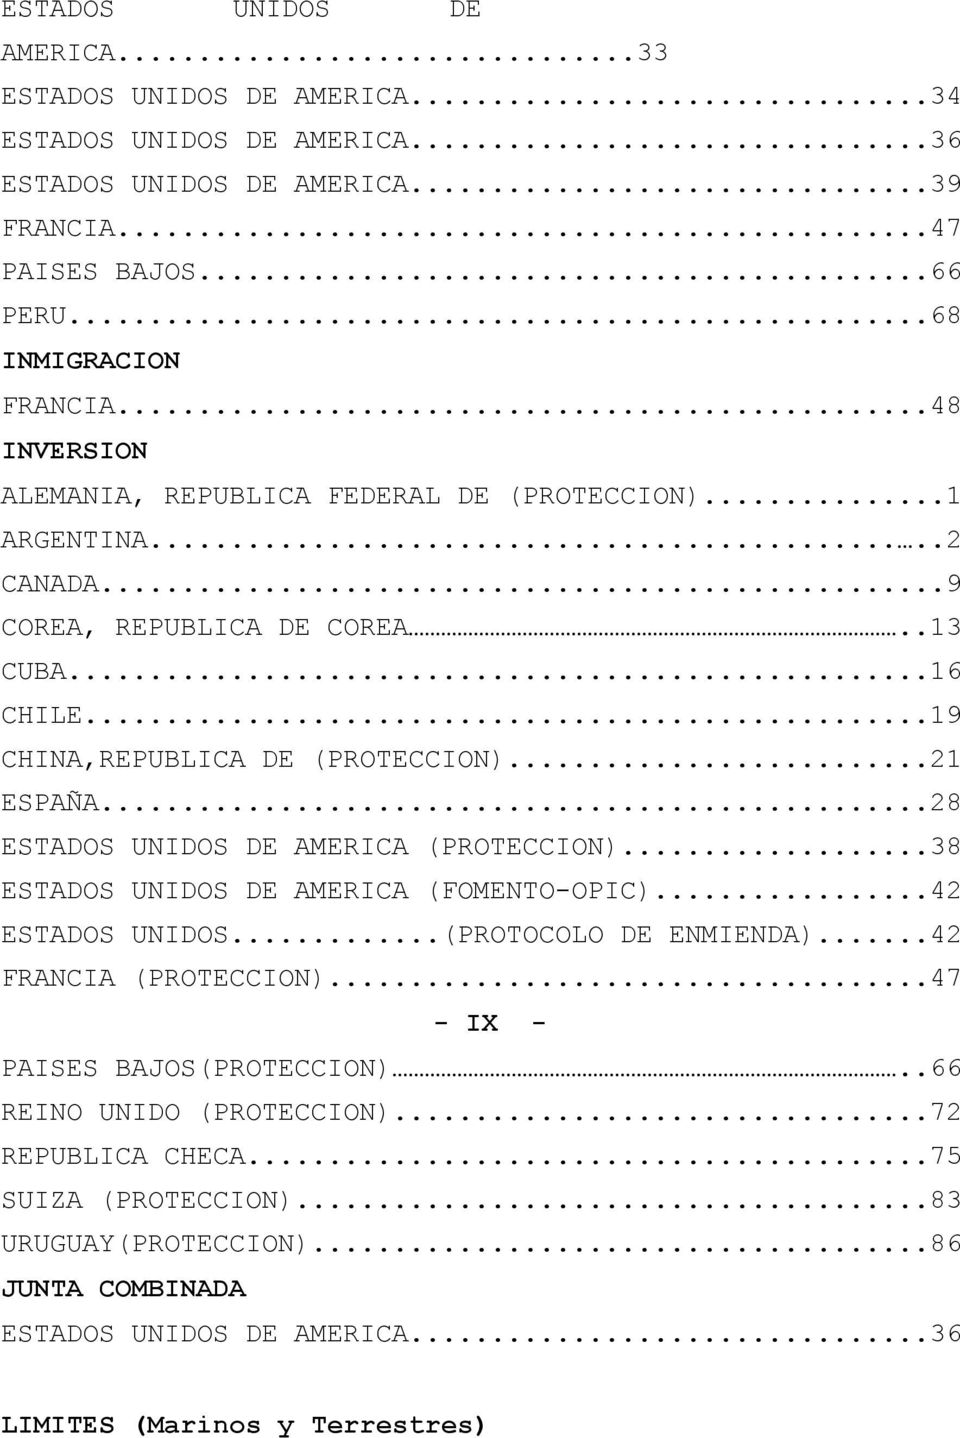 ..28 ESTADOS UNIDOS DE AMERICA (PROTECCION)...38 ESTADOS UNIDOS DE AMERICA (FOMENTO-OPIC)...42 ESTADOS UNIDOS...(PROTOCOLO DE ENMIENDA)...42 FRANCIA (PROTECCION).